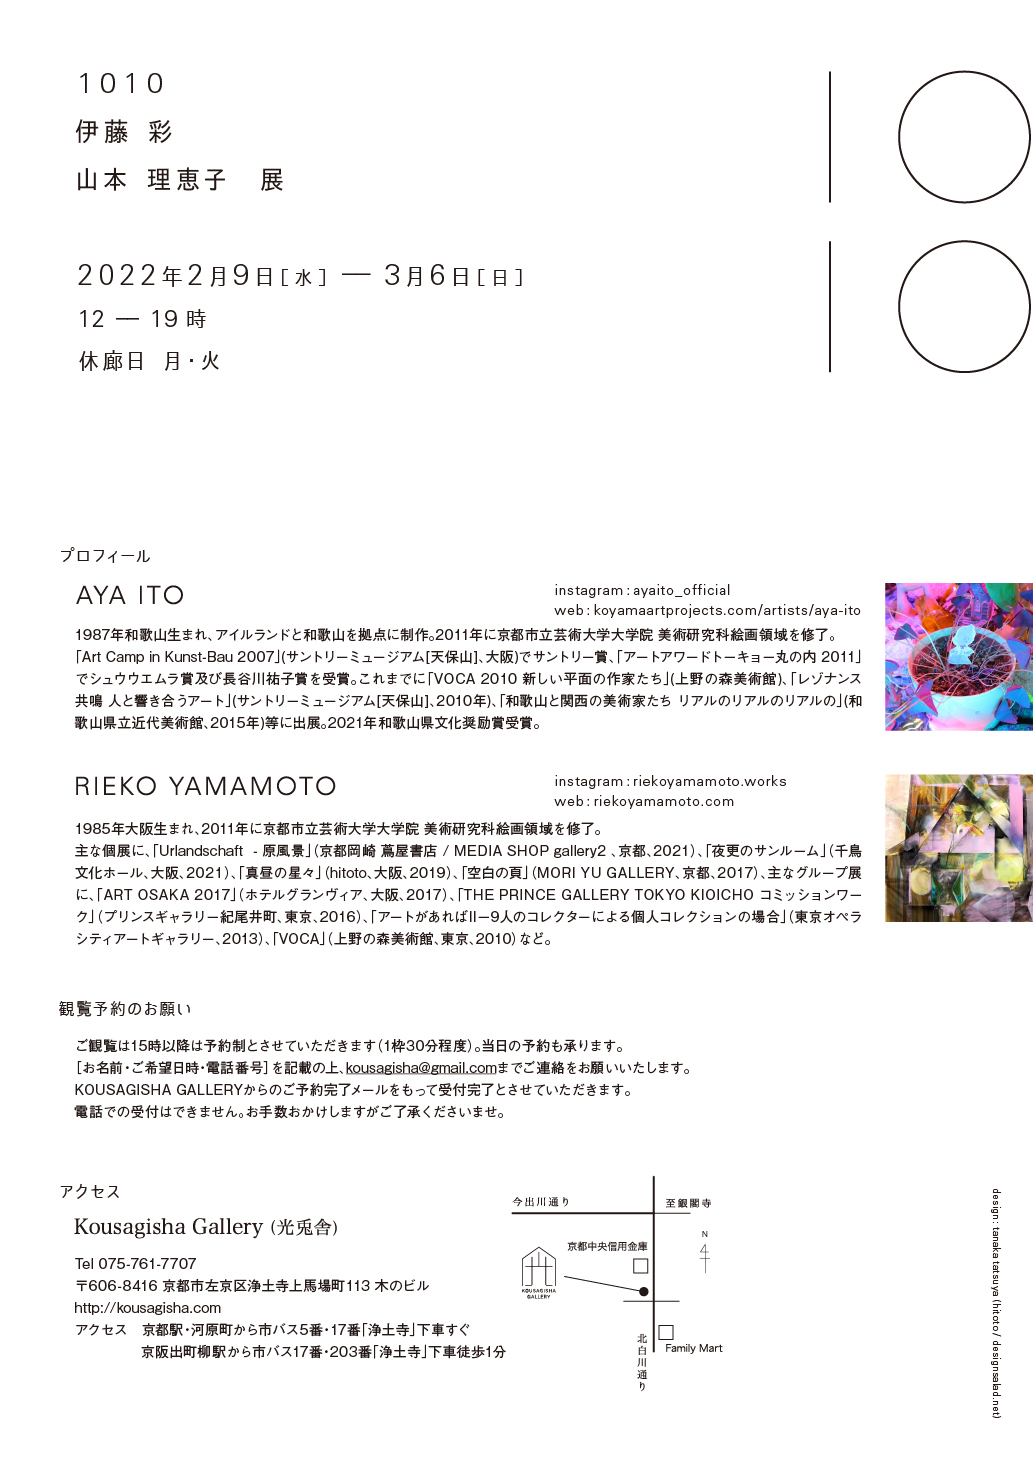 グループ展「1010」Kousagisya Gallery、京都 – Tomio Koyama Gallery ...